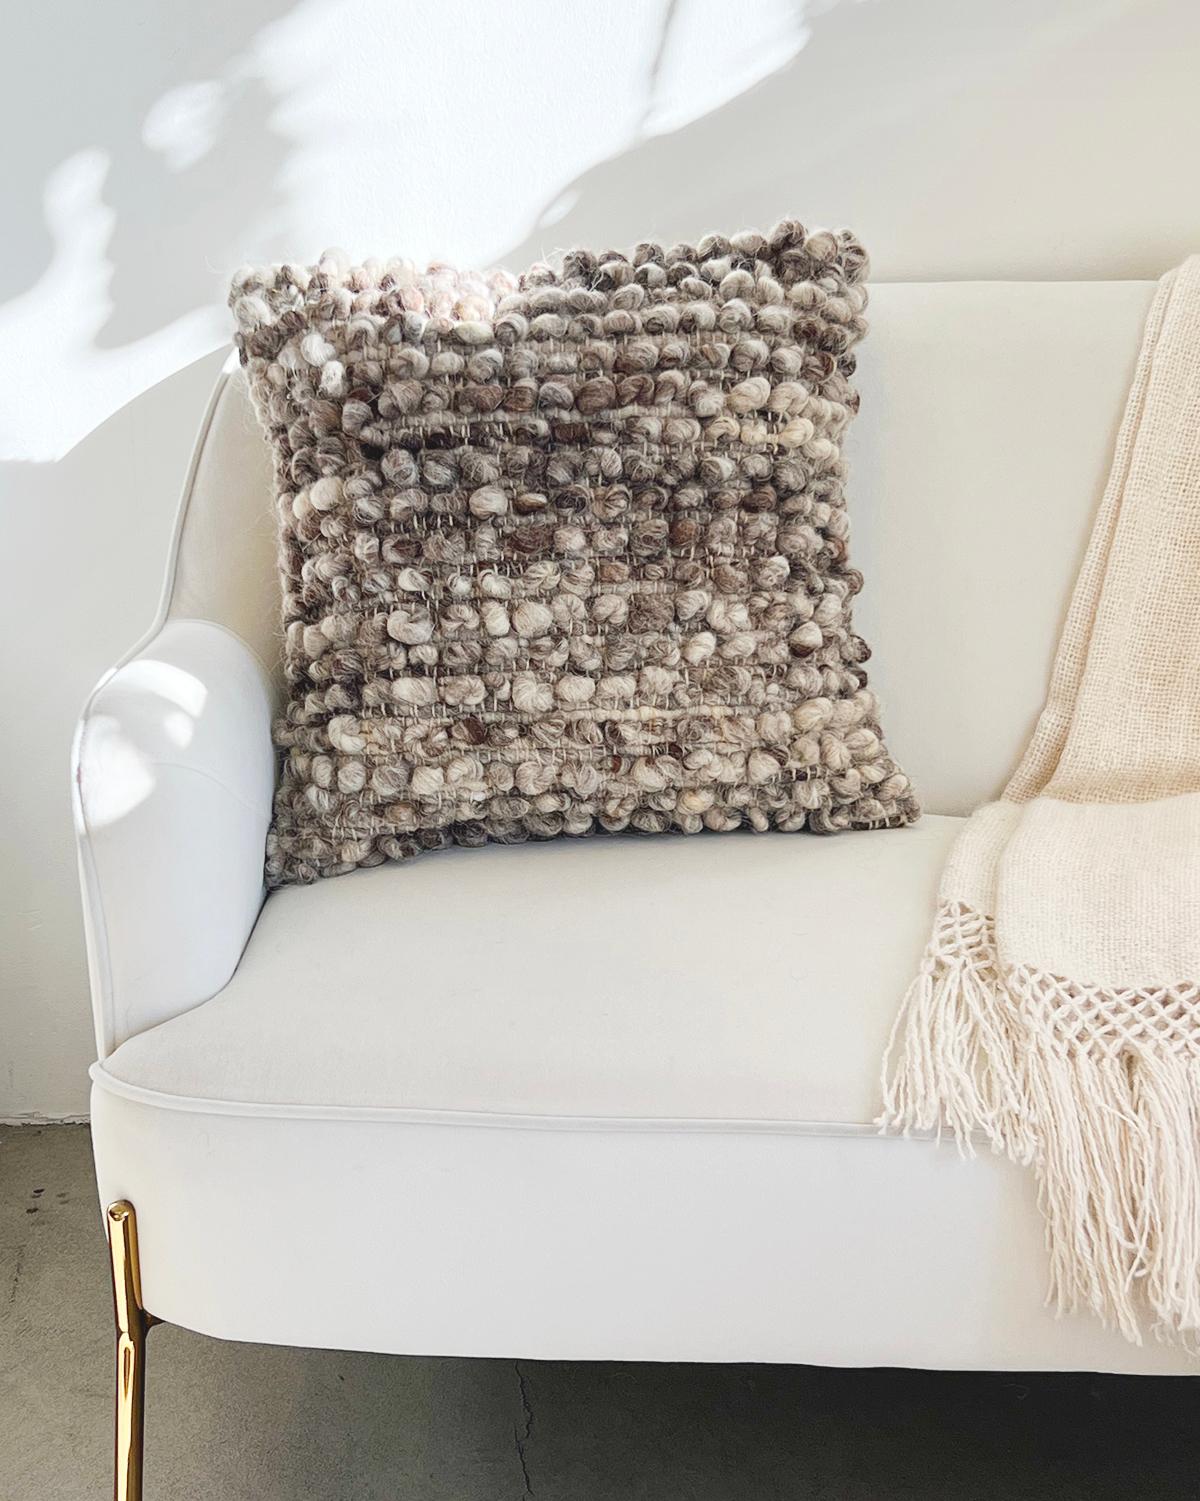 Ein strukturiertes Kissen für Ihre Couch im Wohnzimmer. Dieses einzigartige Kissen zeichnet sich durch Reihen von Bobbles (Kugeln) aus 100 % ungefärbter Schafwolle aus, die für ein wirklich strukturiertes und gemütliches Aussehen sorgen. Diese